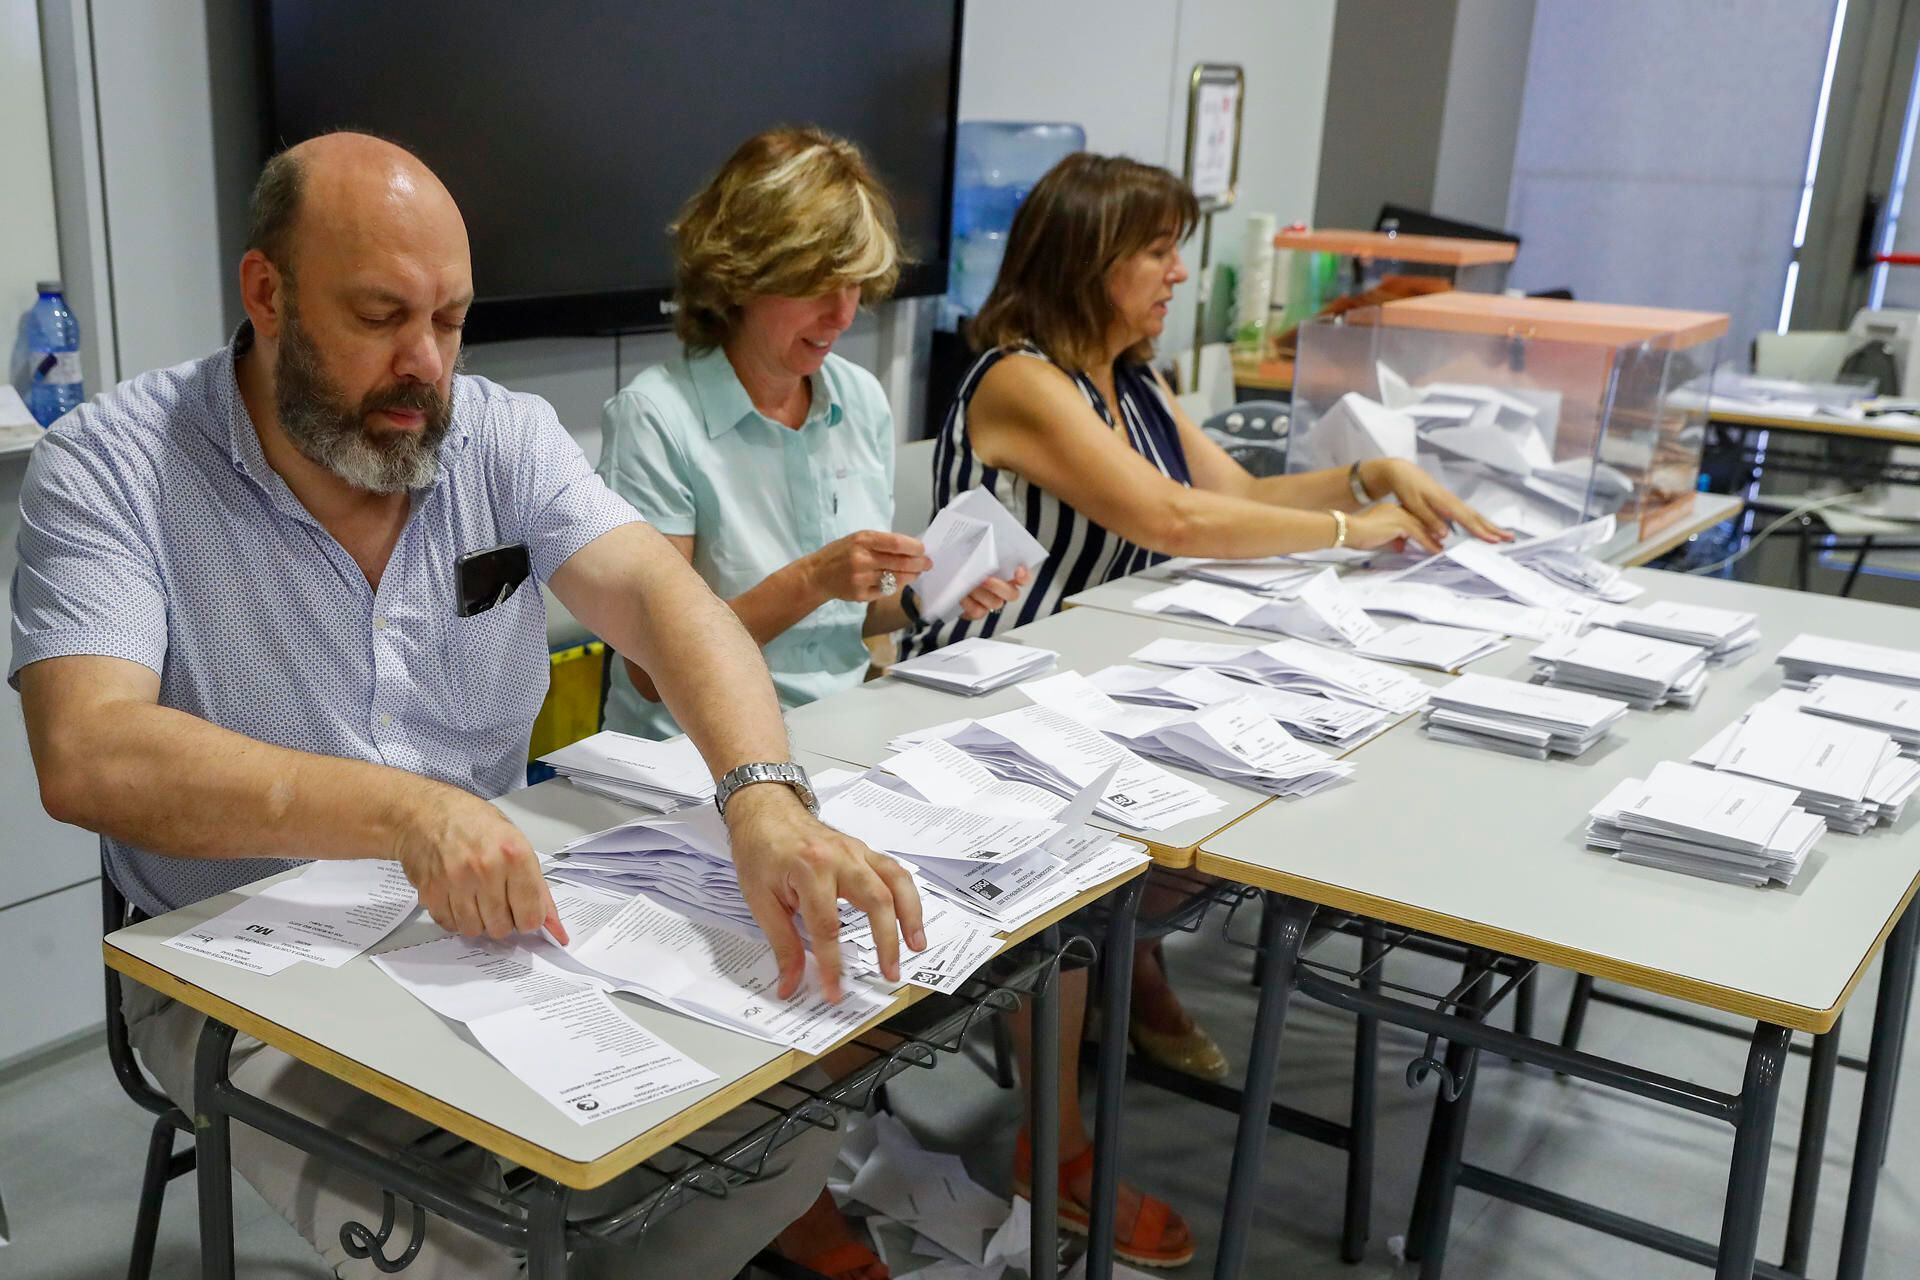 Integrantes de una mesa electoral del Instituto Ortega y Gasset, en Madrid, durante el recuento de votos tras el cierre de los colegios tras las elecciones generales celebradas en España (Foto: EFE)